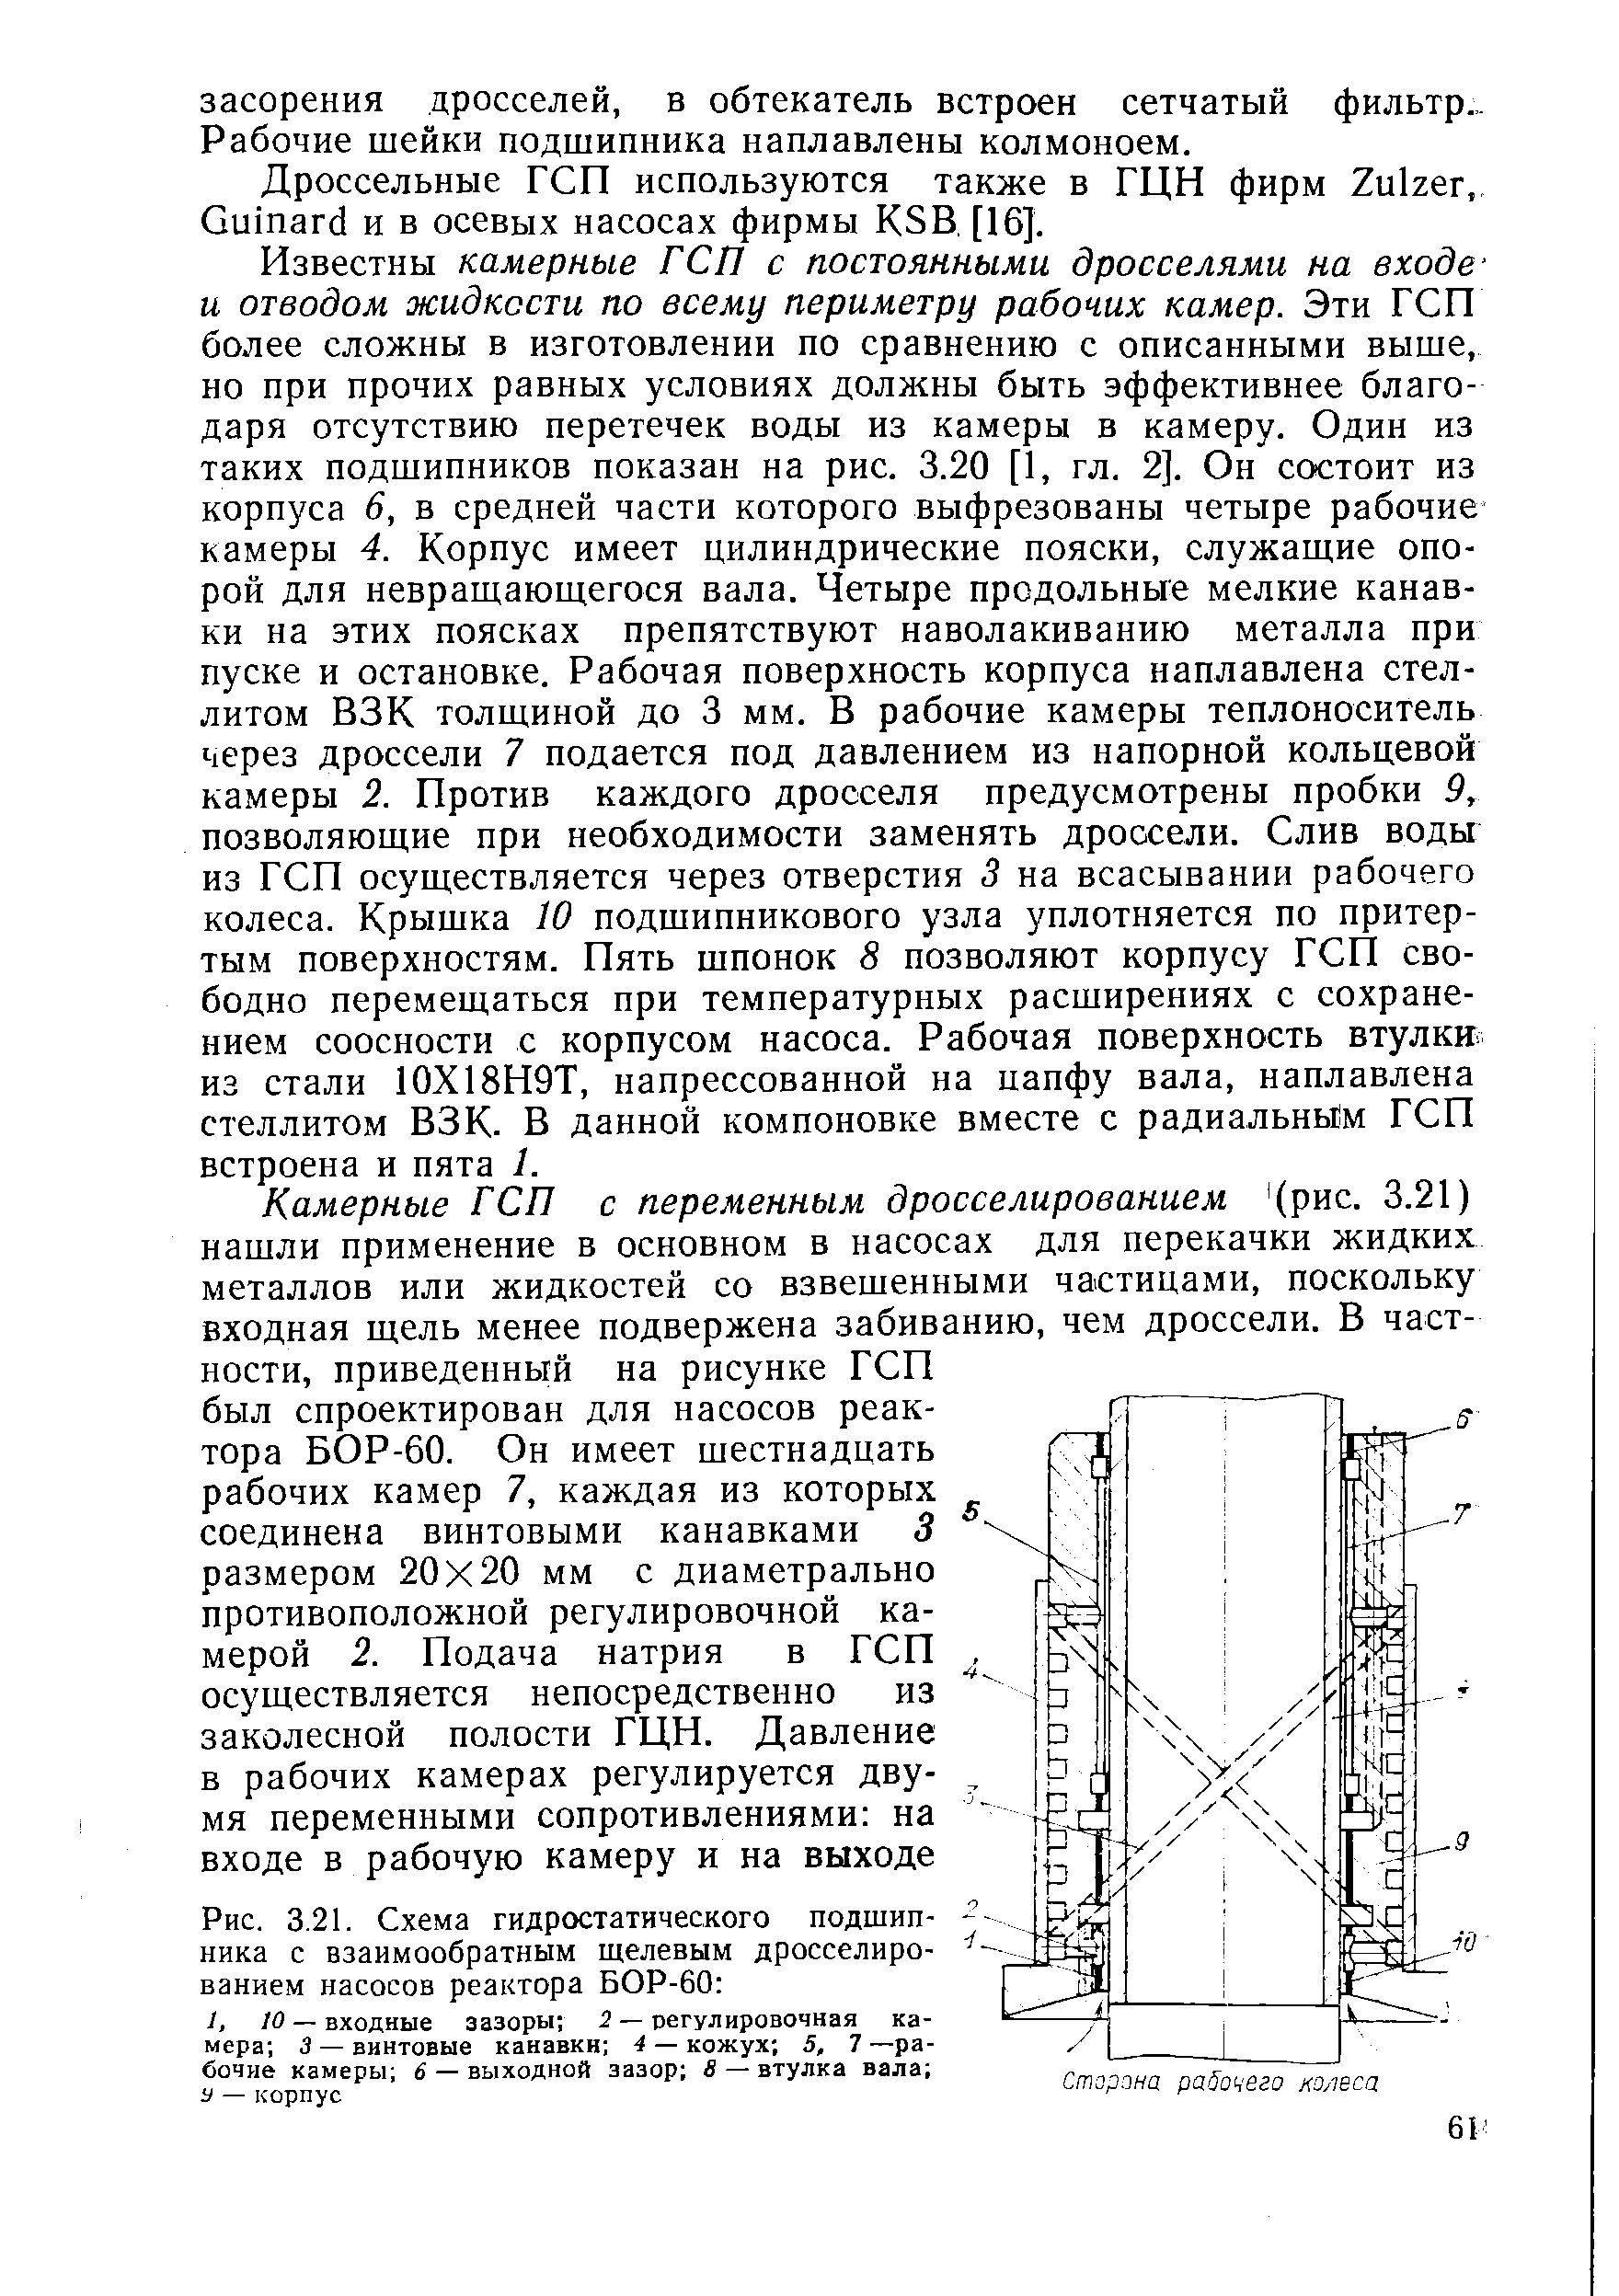 Рис. 3.21. Схема гидростатического подтип-ника с взаимообратным щелевым дросселированием насосов реактора БОР-60 
